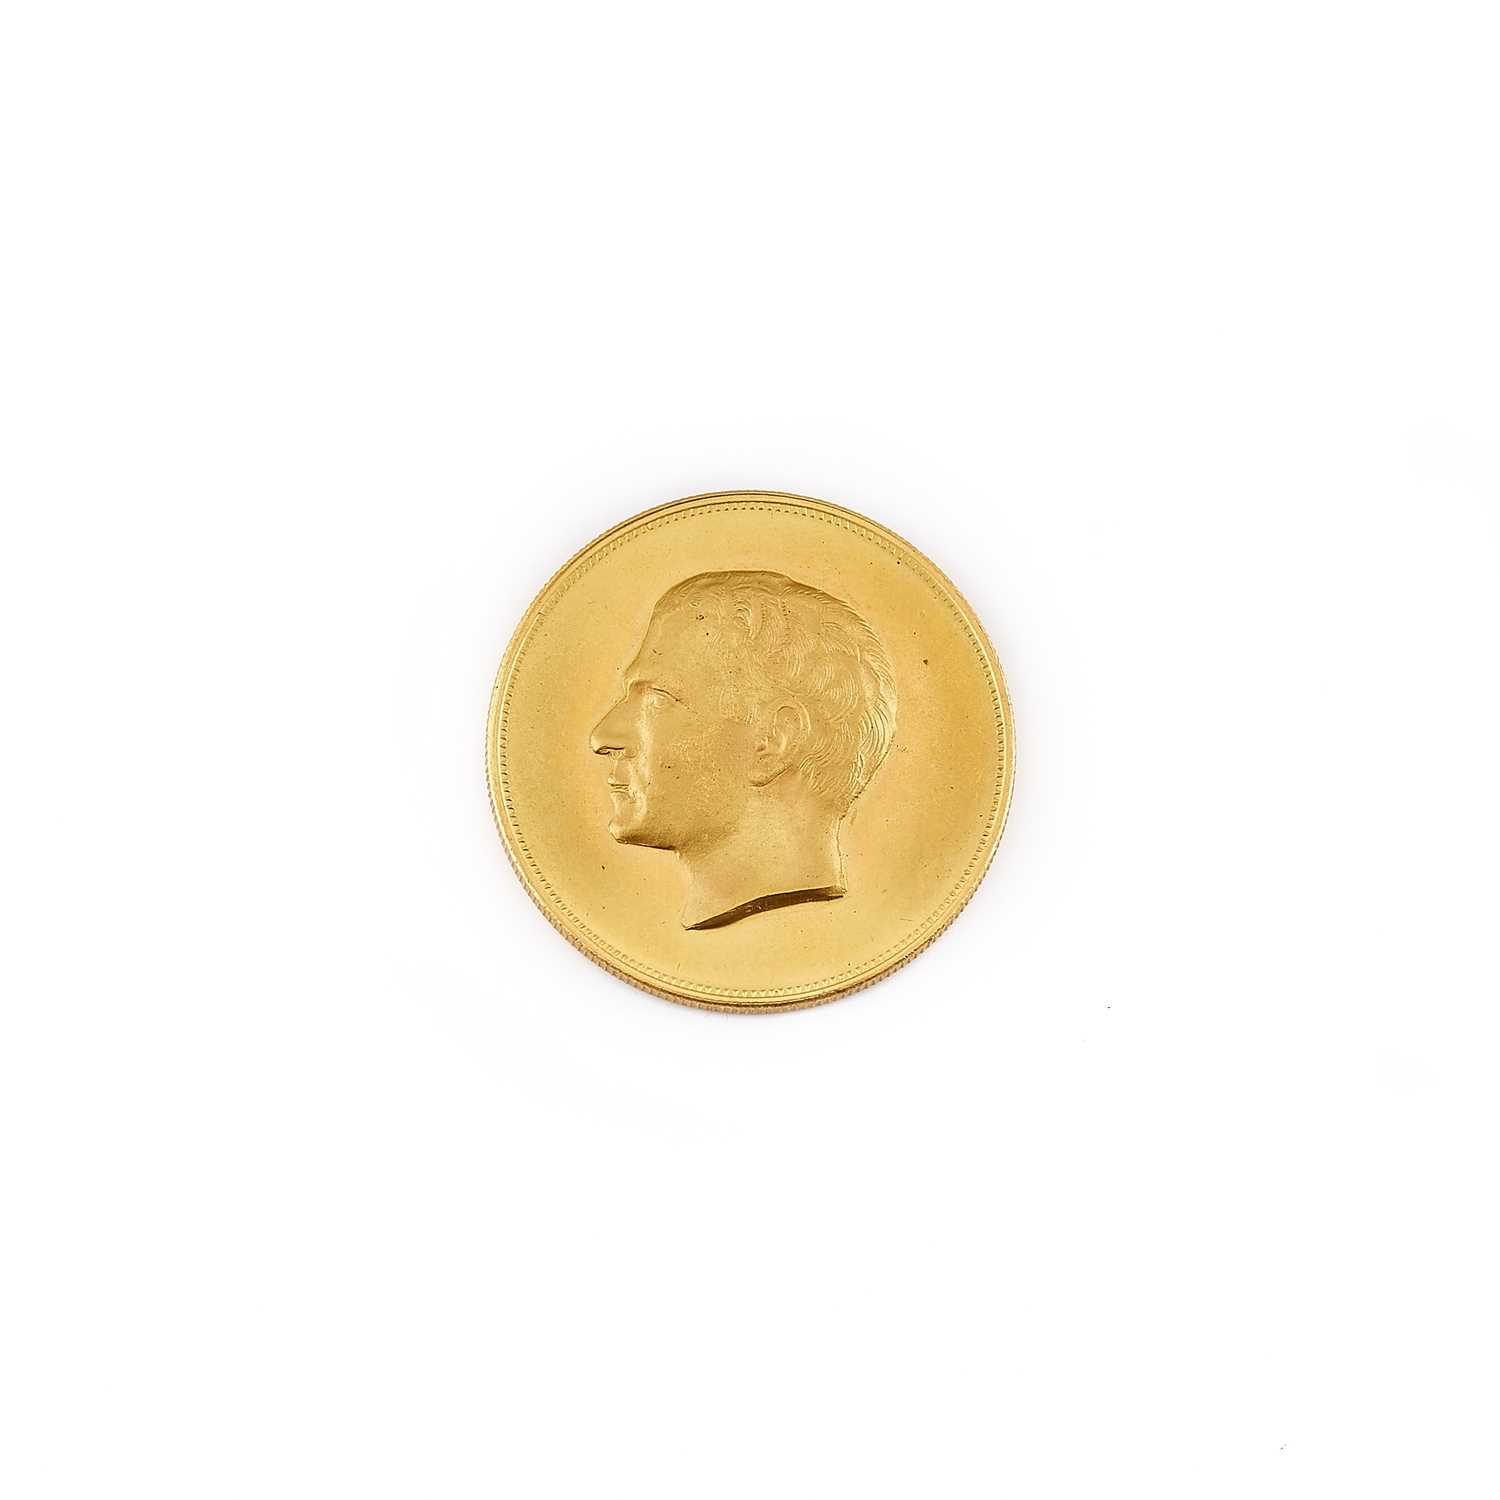 Lot 1167 - Iran Gold Commemorative Medal